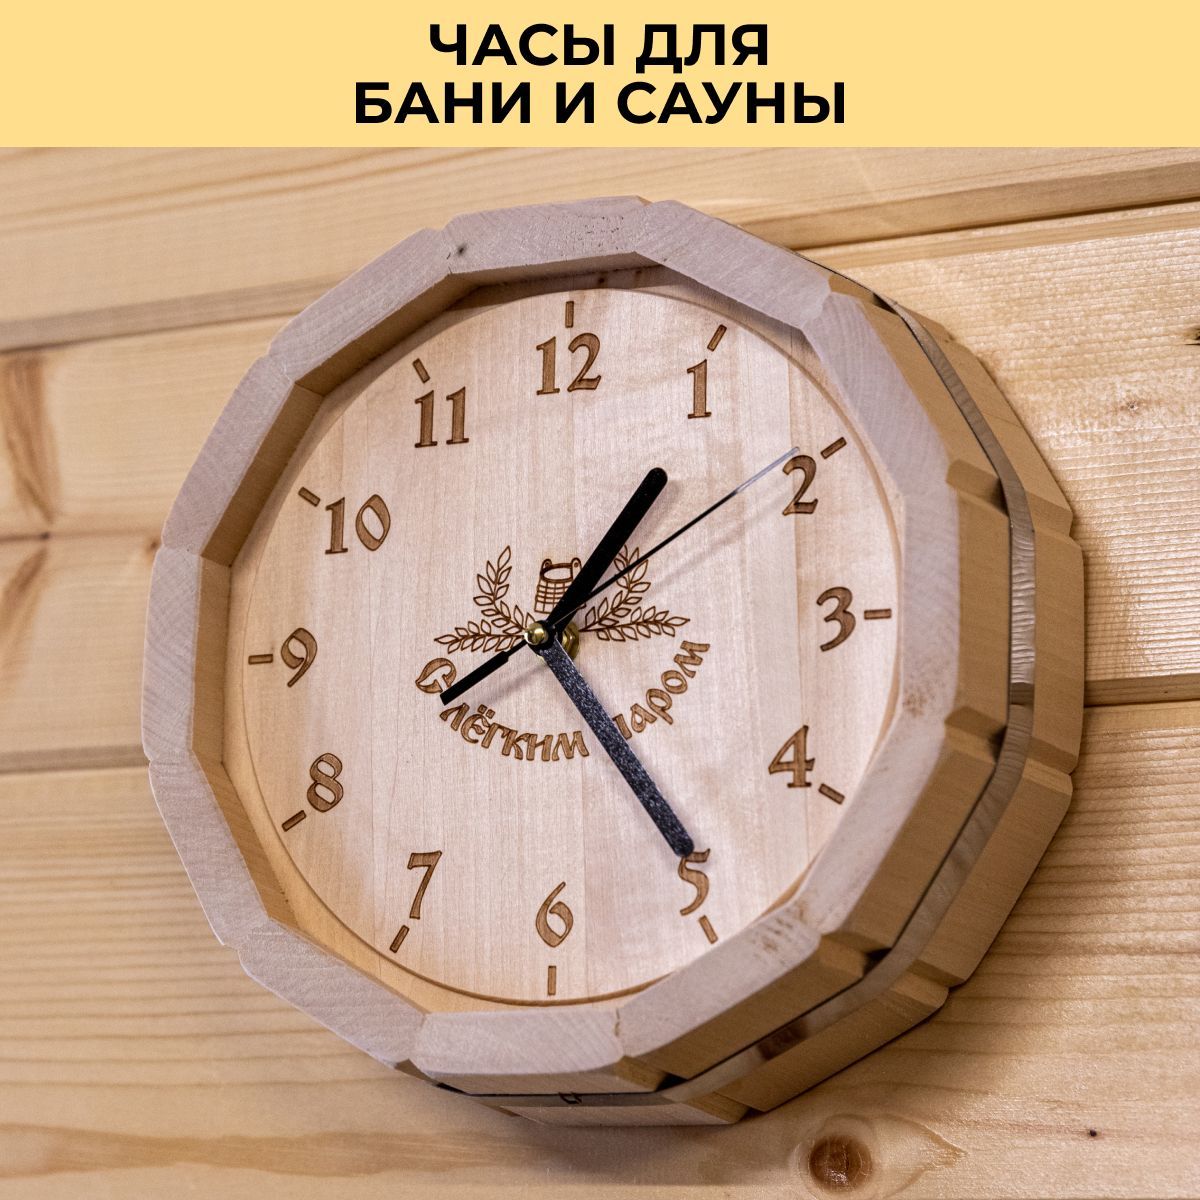 Часы настенные стилизованные в виде бочки из-под виски. № - купить в Украине на натяжныепотолкибрянск.рф